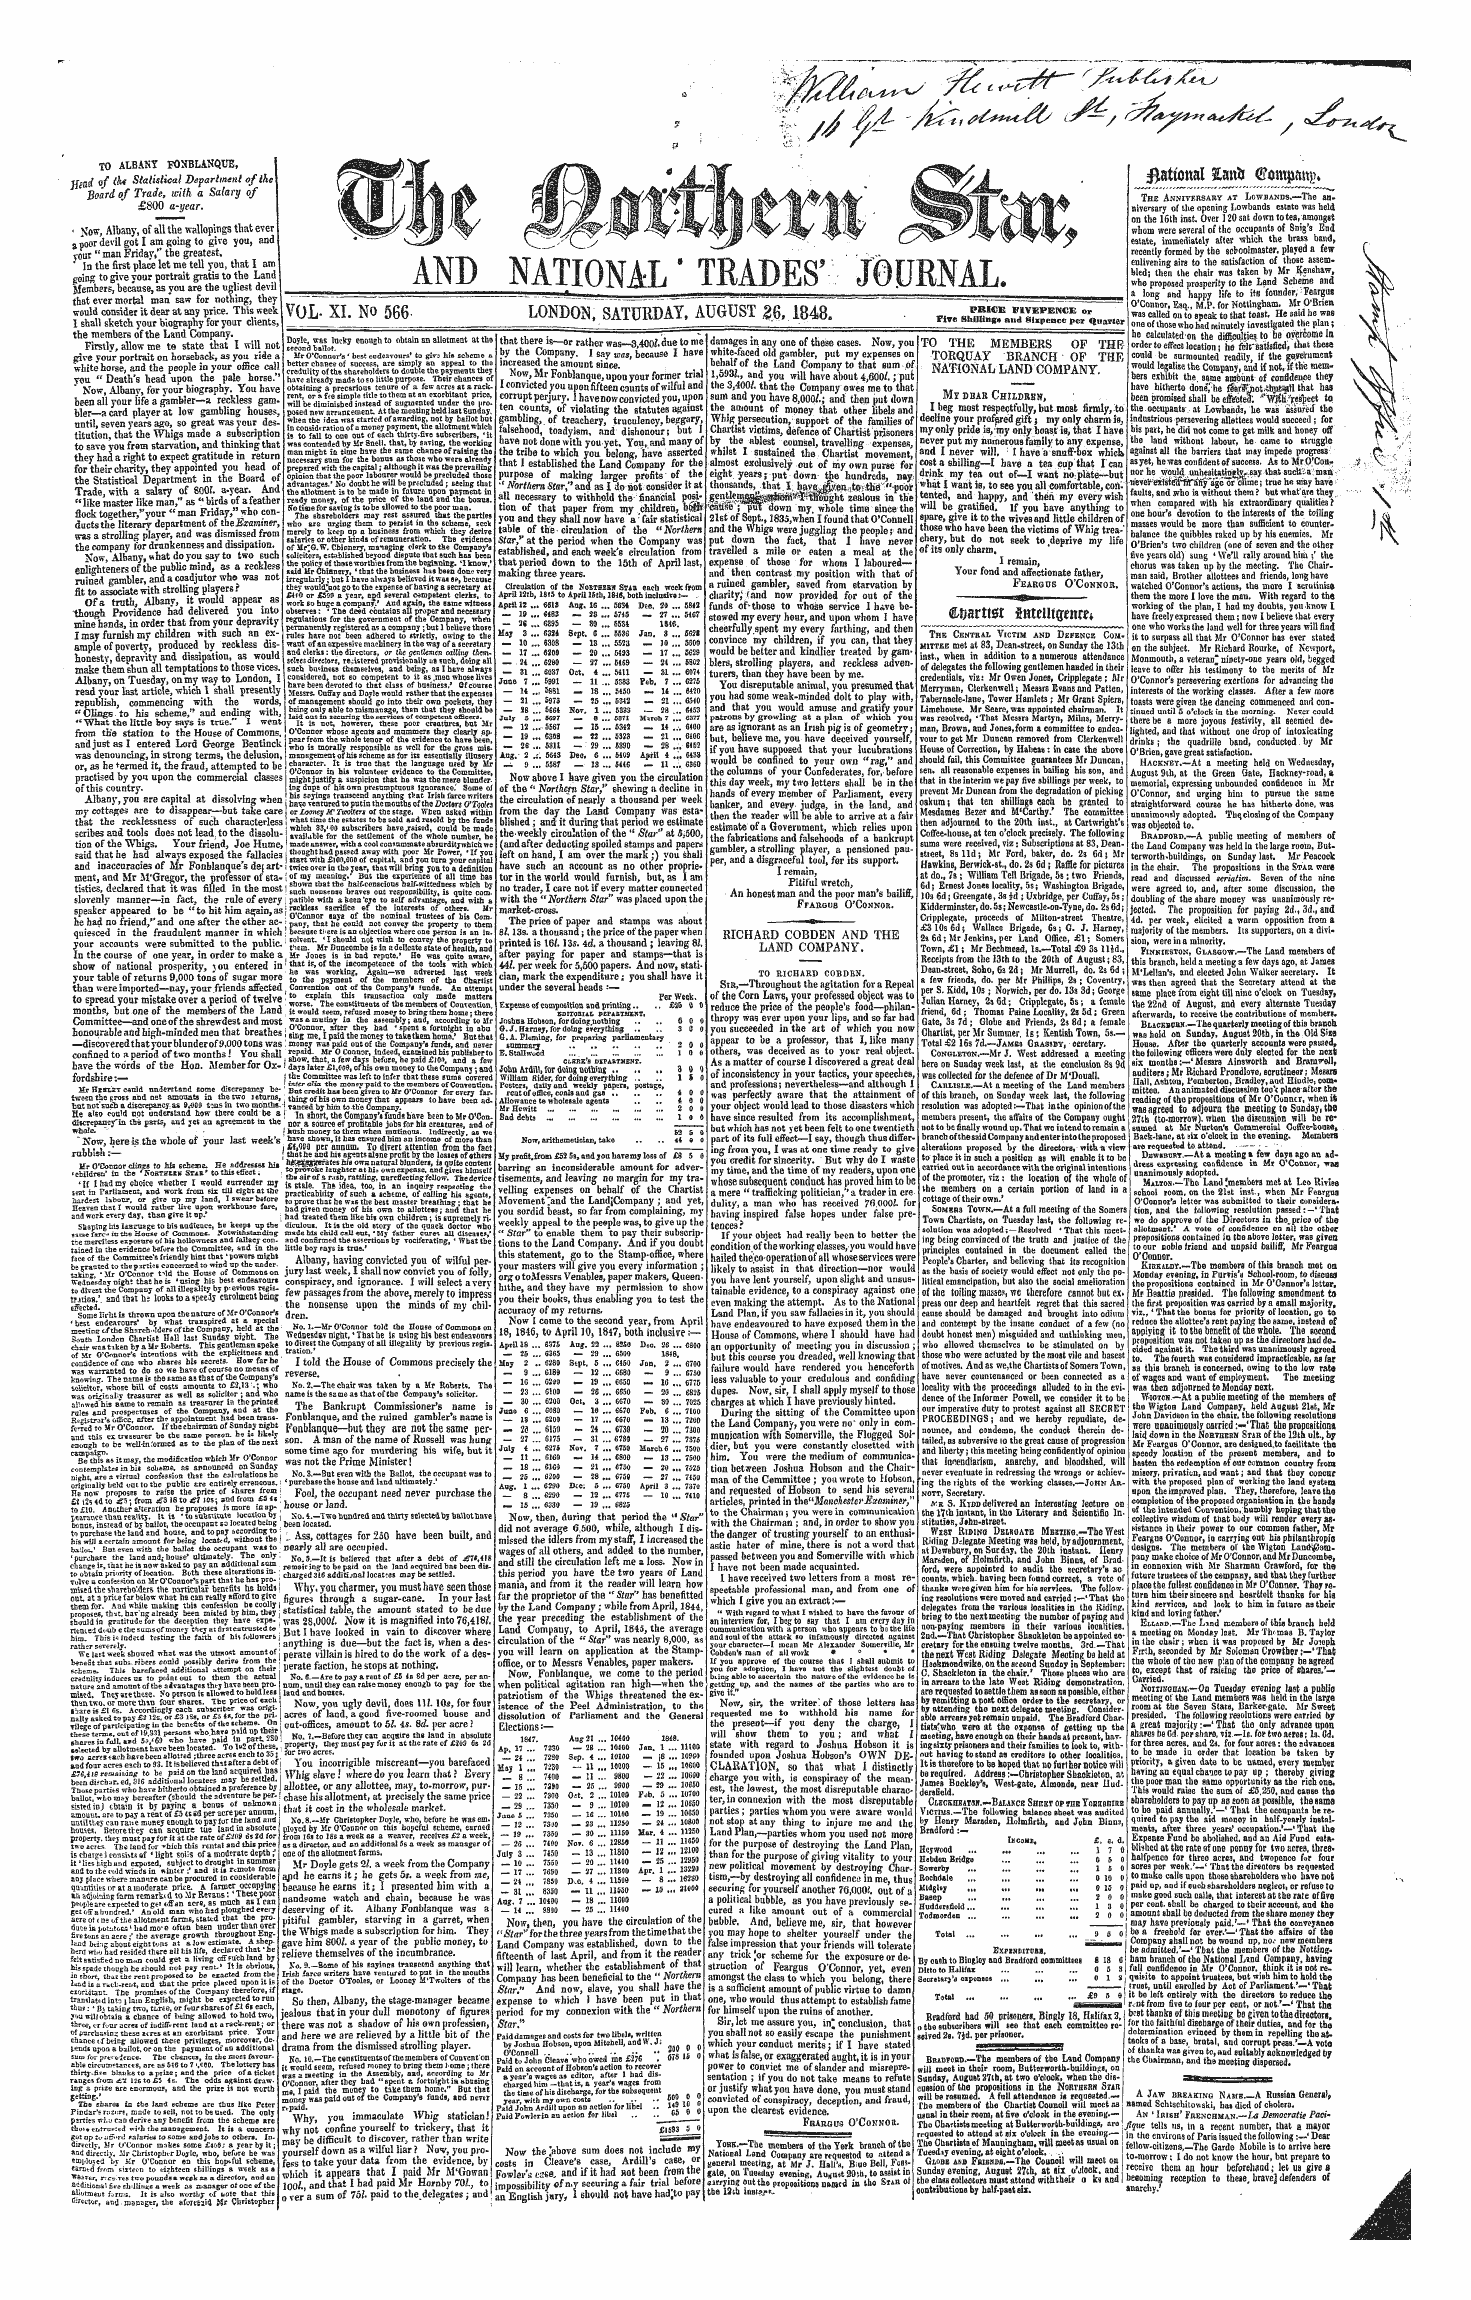 Northern Star (1837-1852): jS F Y, 1st edition - Rational %M\B Fforopttg*